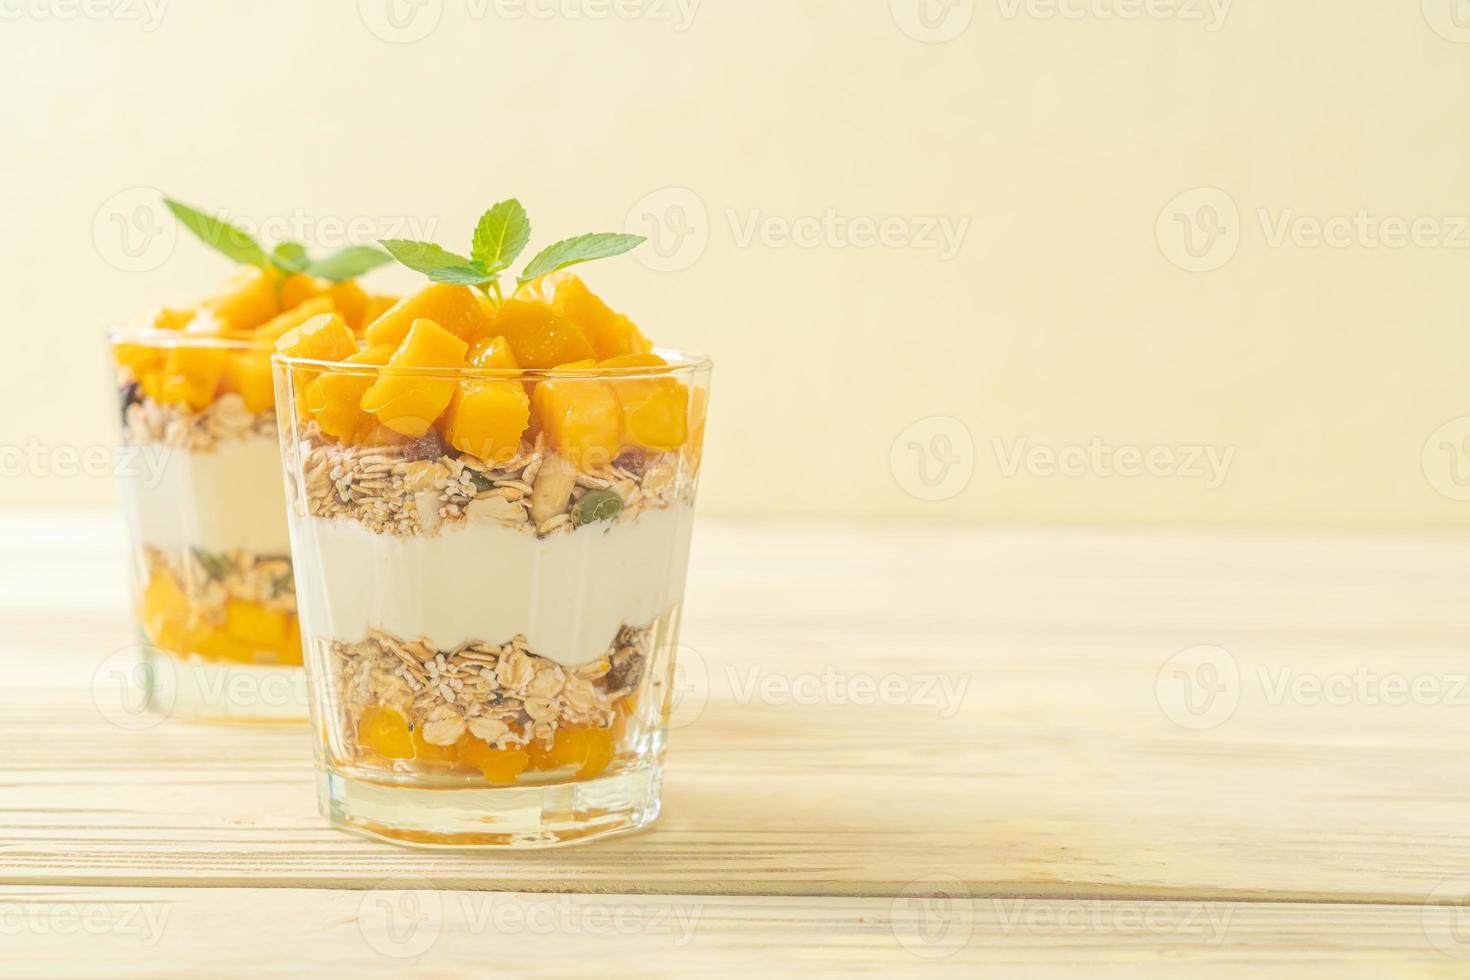 yogurt al mango fresco con muesli in vetro - stile di cibo sano foto